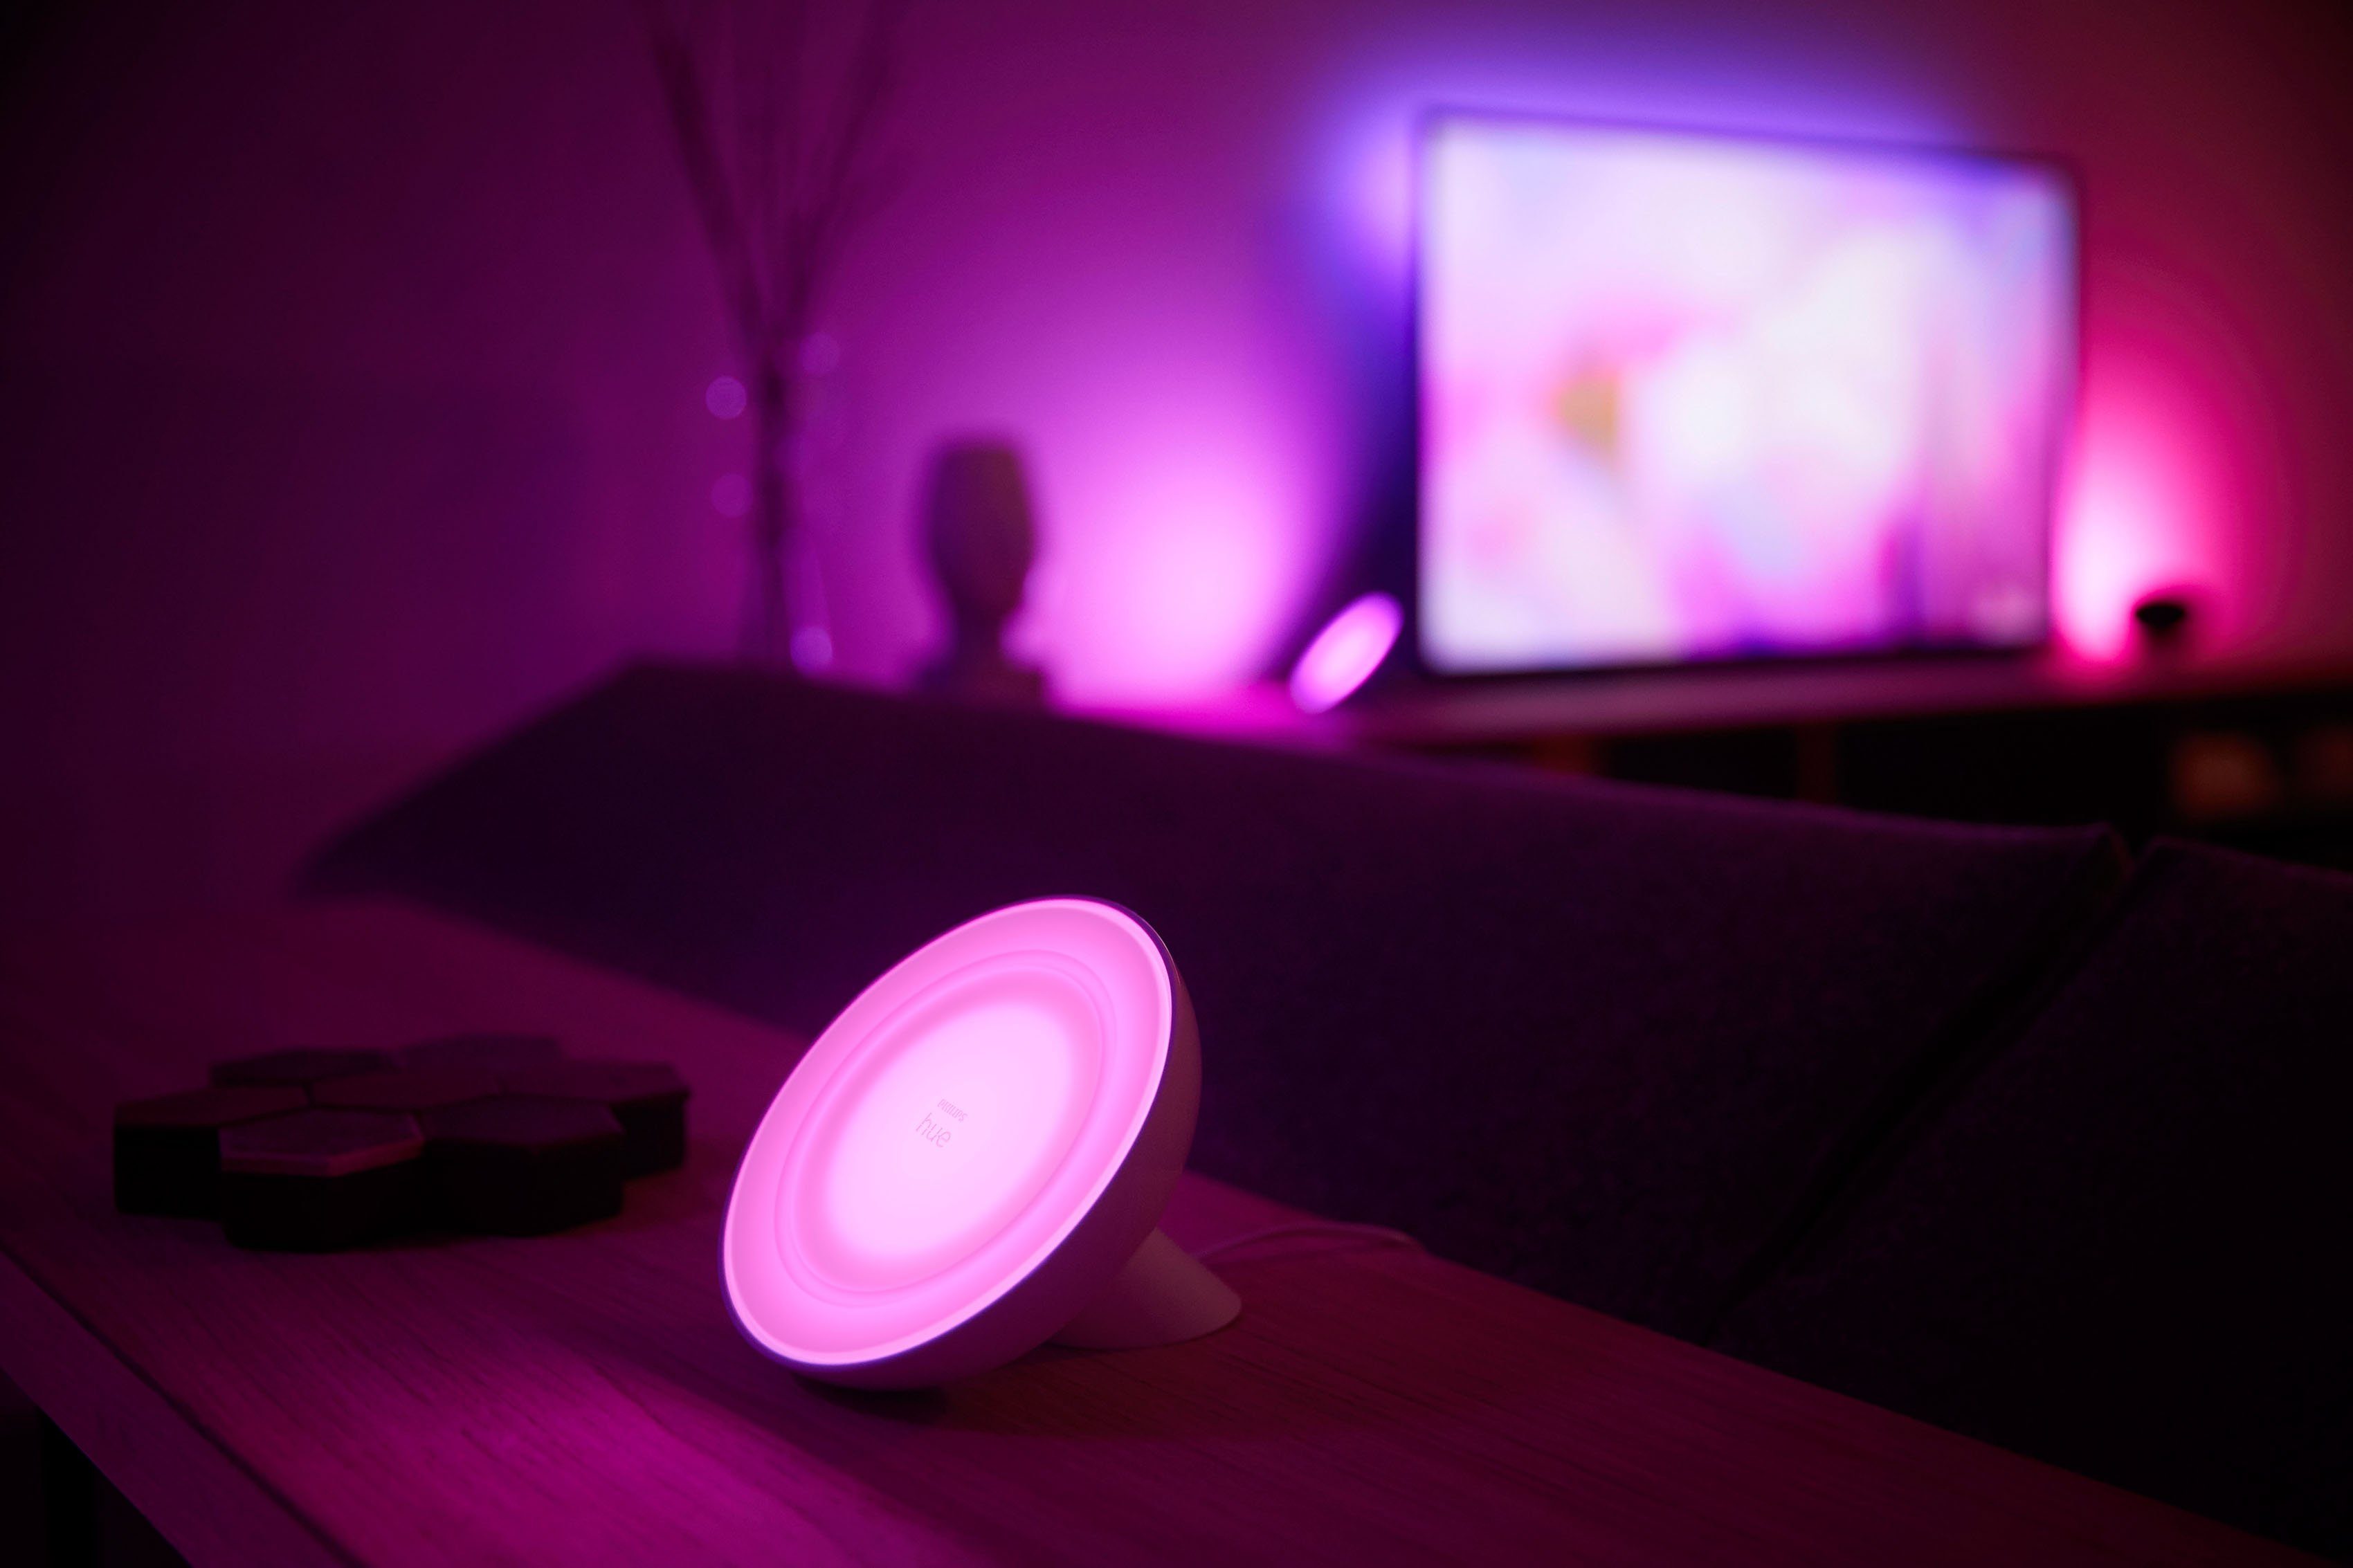 LED Home, Farbwechsler, Kaltweiß, 500 Warmweiß, Dimmfunktion, Philips integriert, Hue fest Farbsteuerung, Ein-/Ausschalter, LED LED Lumen Bluetooth, weiß, Tischleuchte Neutralweiß, Bloom, Tischleuchte, Smart